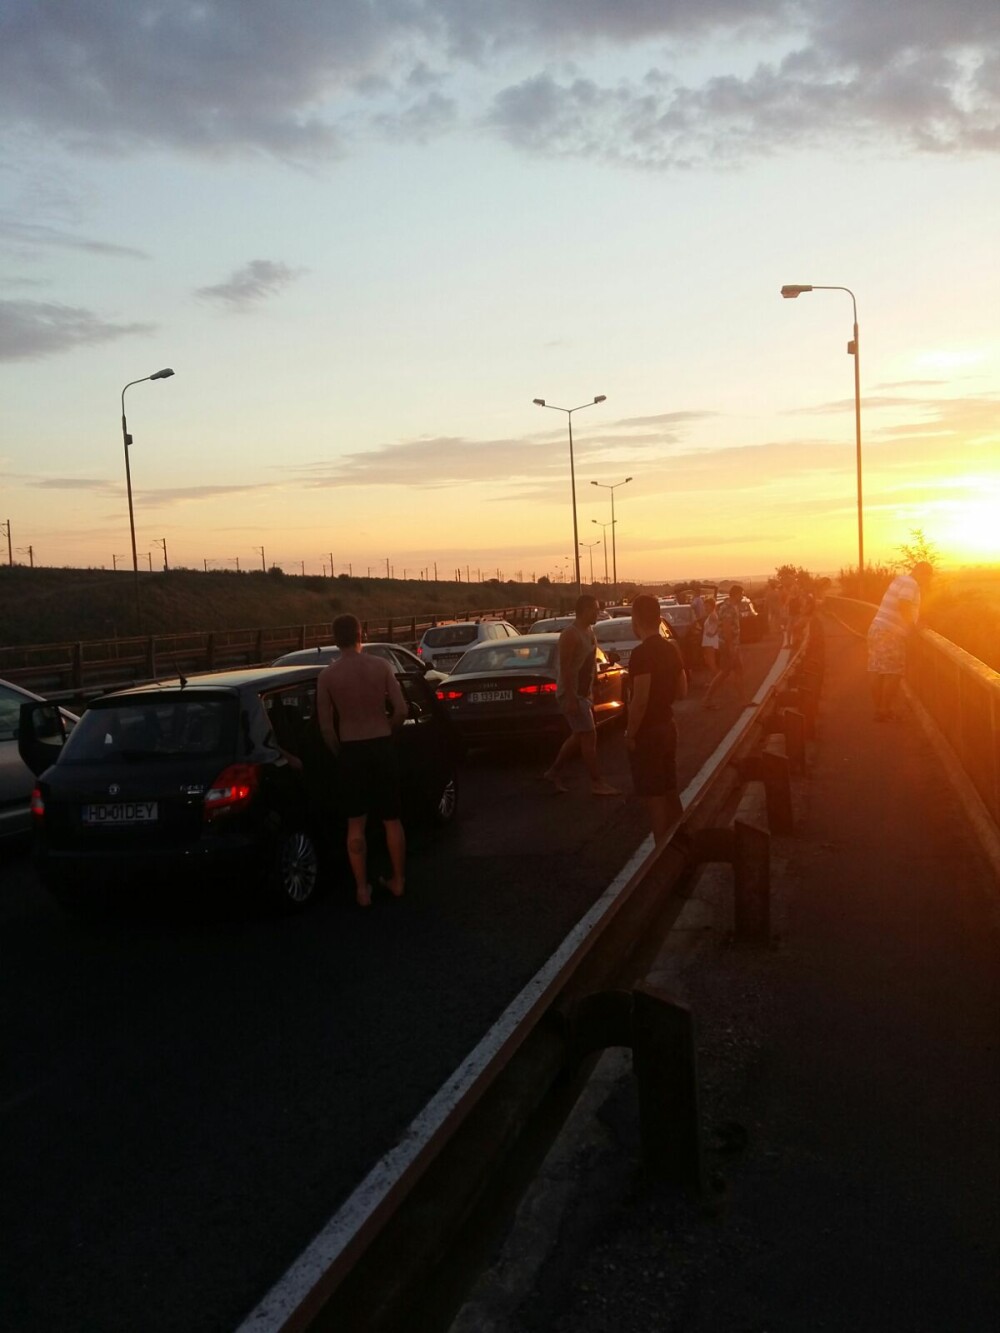 Accident in lant pe Autostrada Soarelui: o persoana a fost grav ranita. Traficul s-a reluat spre Capitala pe 2 benzi. FOTO - Imaginea 2